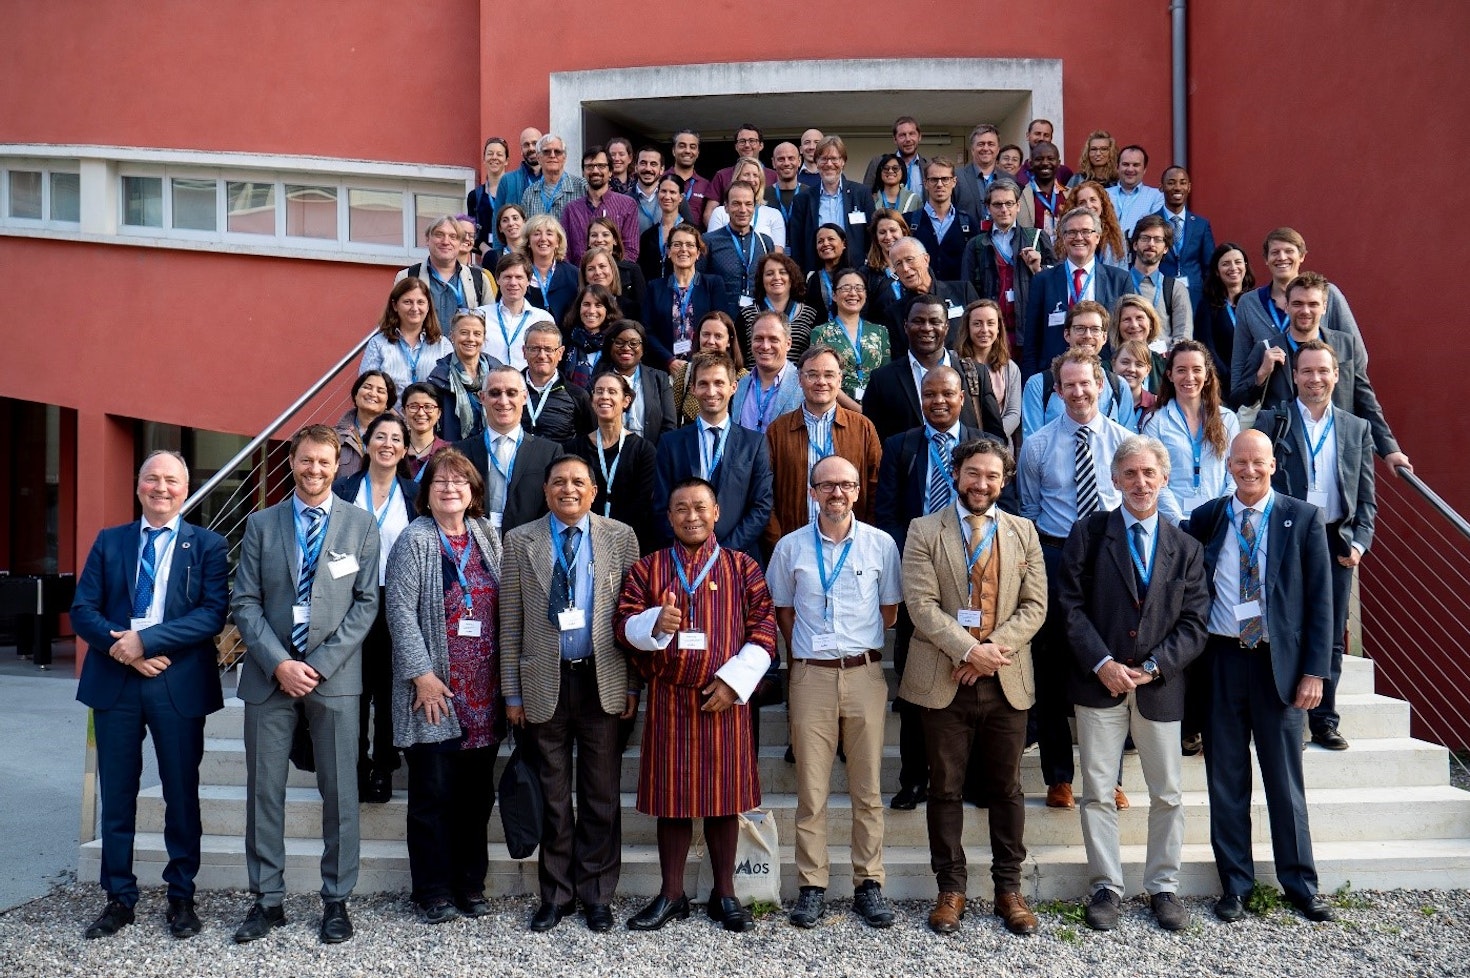 Dal 17 al 19 ottobre 2018, Eurac Research ha ospitato il GLOMOS Kick-off Workshop, una conferenza internazionale con 150 esperti tra ricercatori, professionisti e rappresentanti delle Nazioni Unite. Il workshop ha affrontato il tema "Global Mountain Safeguard Research".